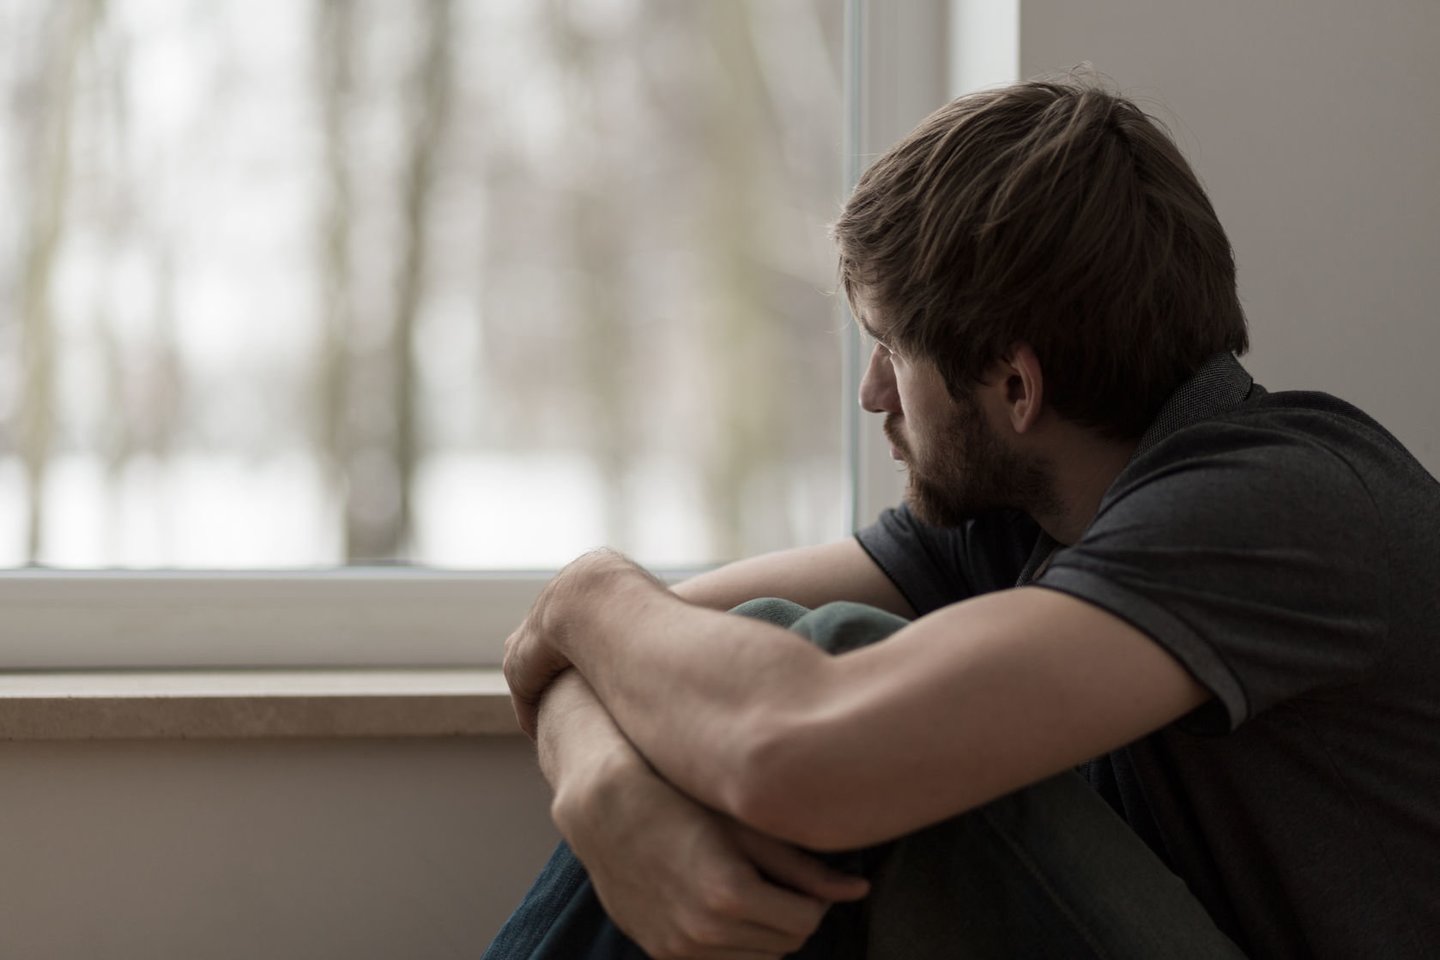 Psichiatrai teigia, kad labai dažnai liūdesys arba pablogėjusi nuotaika yra tik vienas iš depresijos simptomų.  <br>123rf.com nuotr.